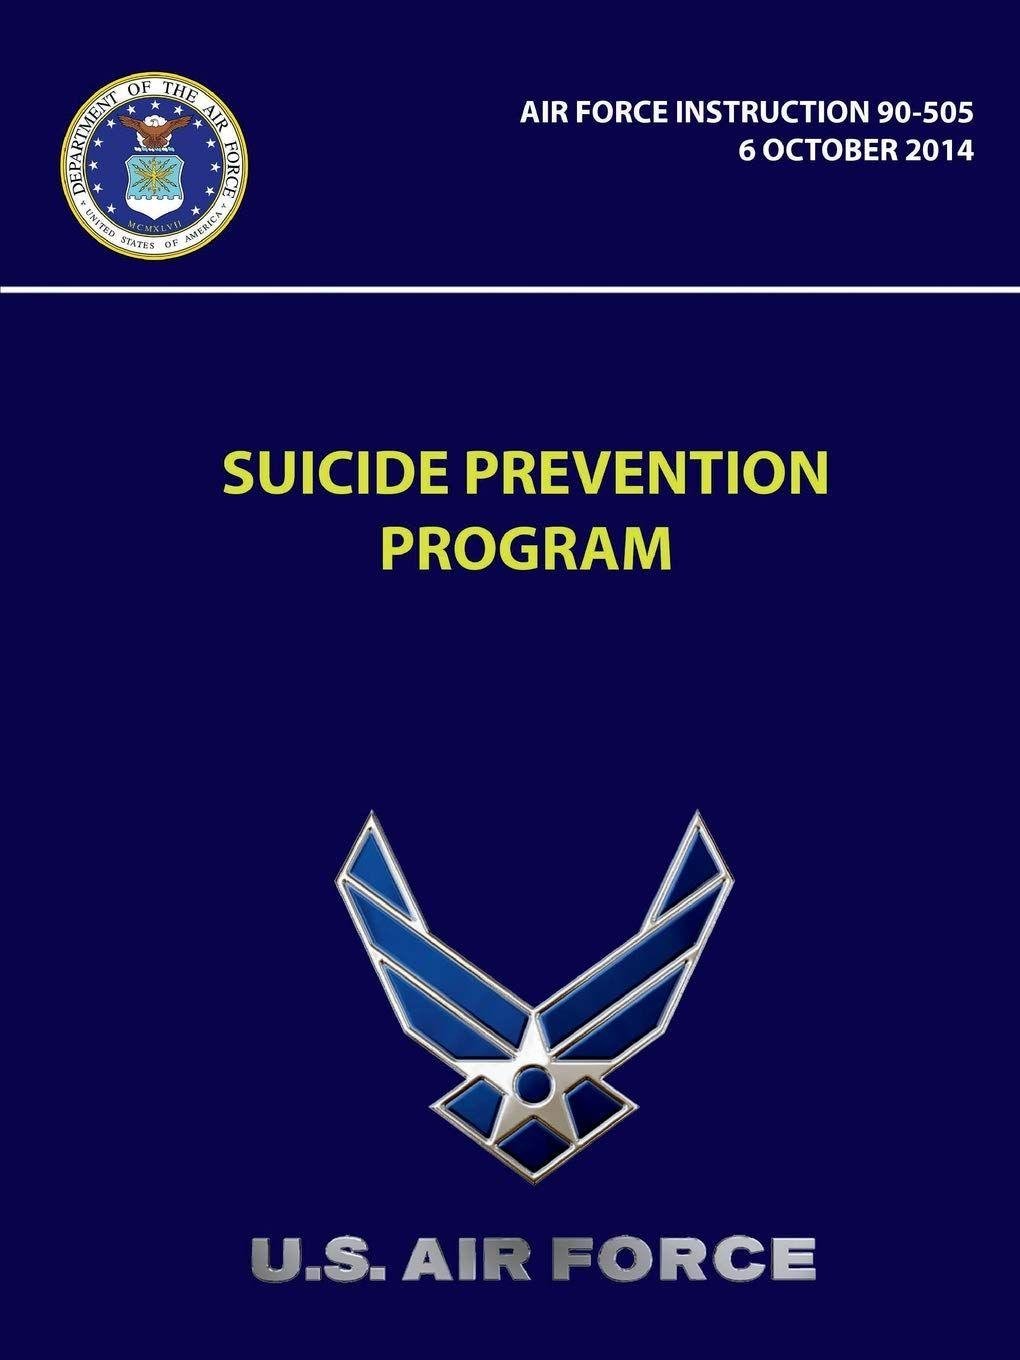 AFPD Logo - Suicide Prevention Program - Air Force Instruction 90-505: U.S. Air ...